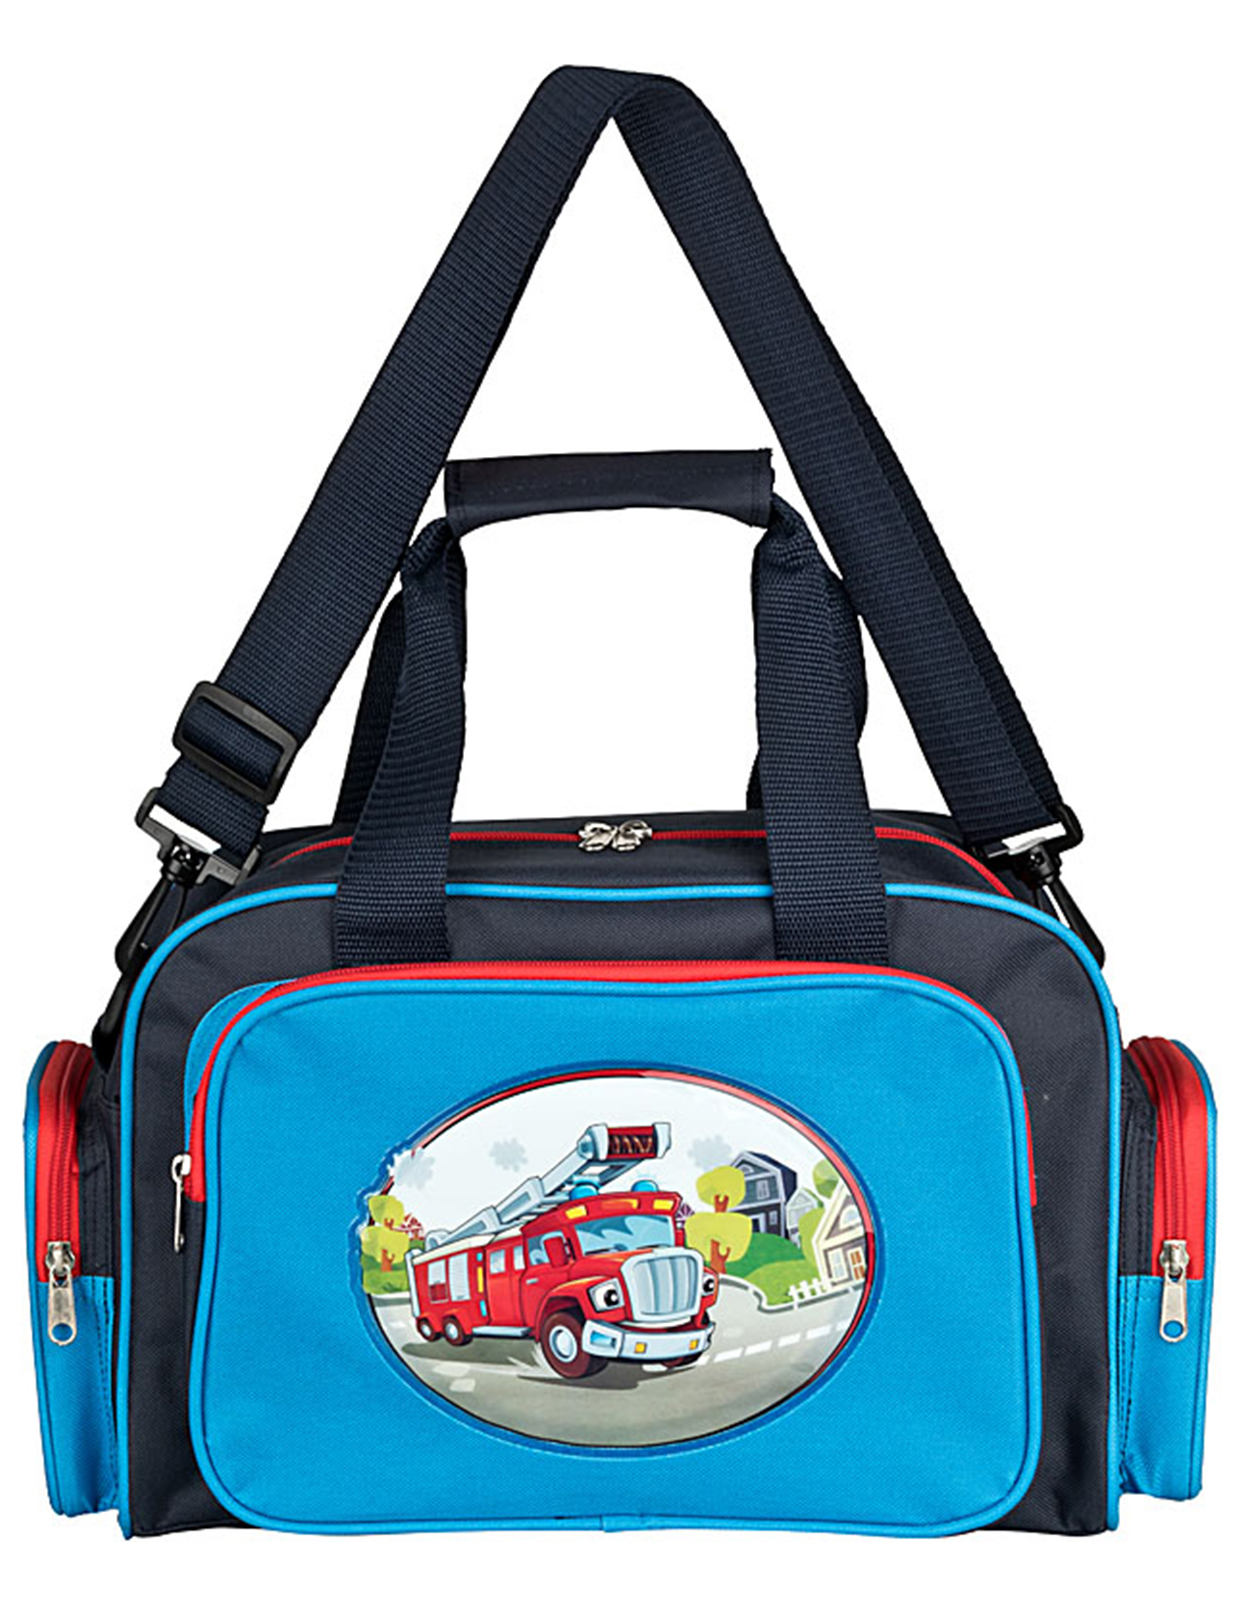 Kinder Reisetasche Kindergartentasche mit Feuerwehr Motiv in blau - 76582